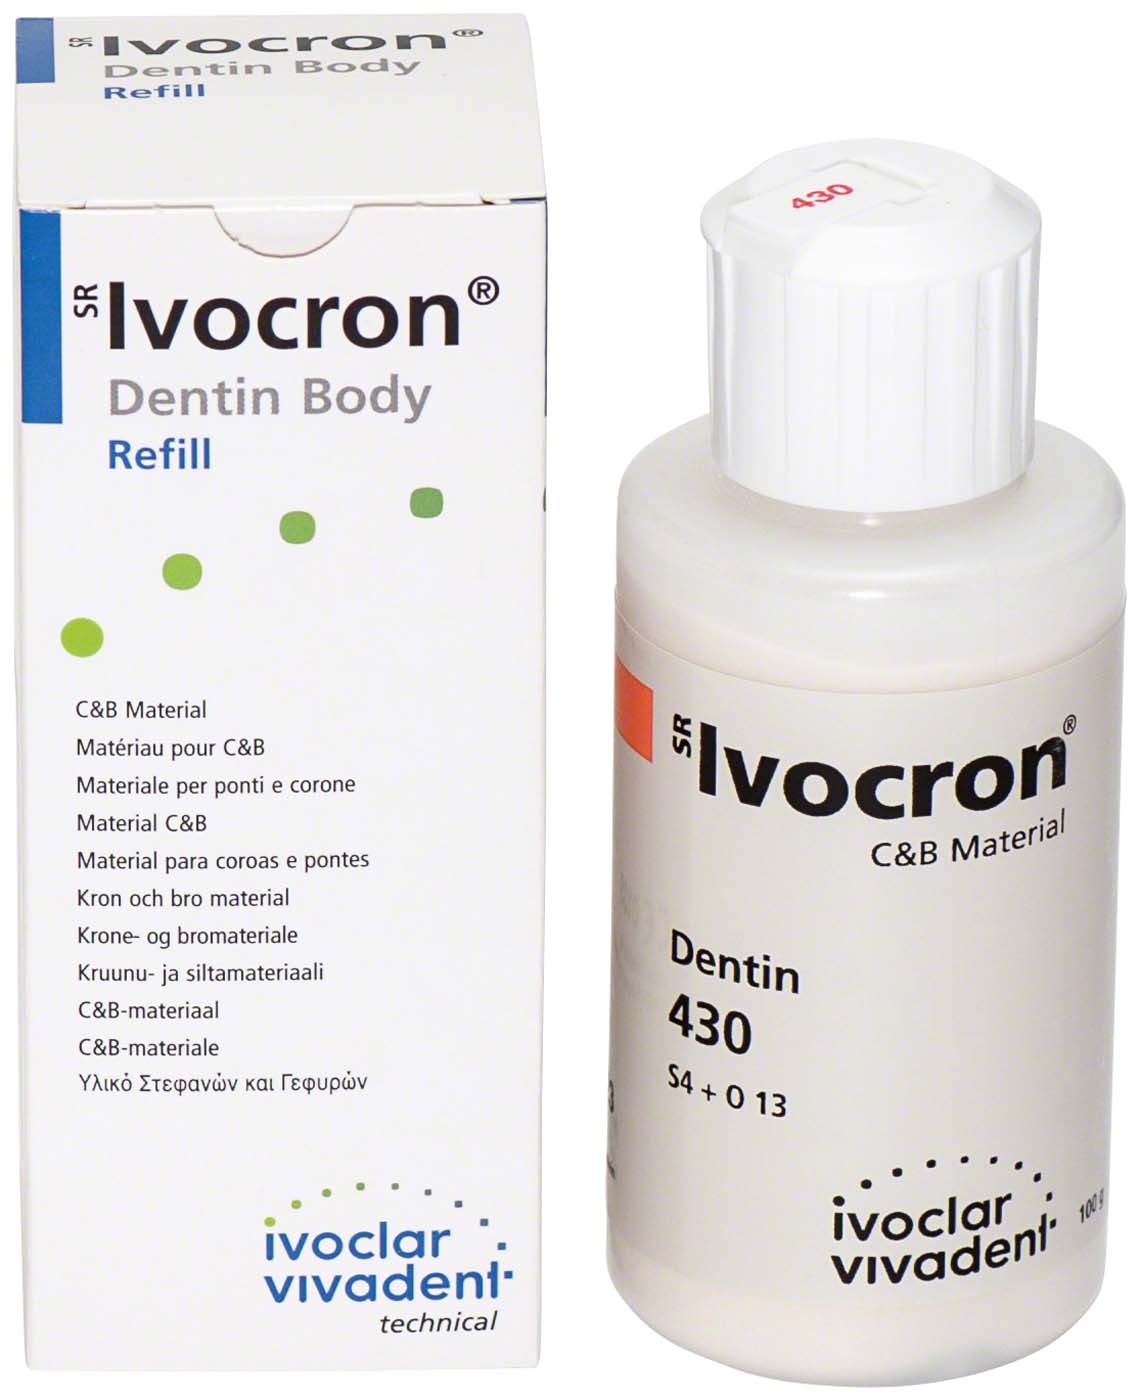 SR Ivocron® Ivoclar Vivadent